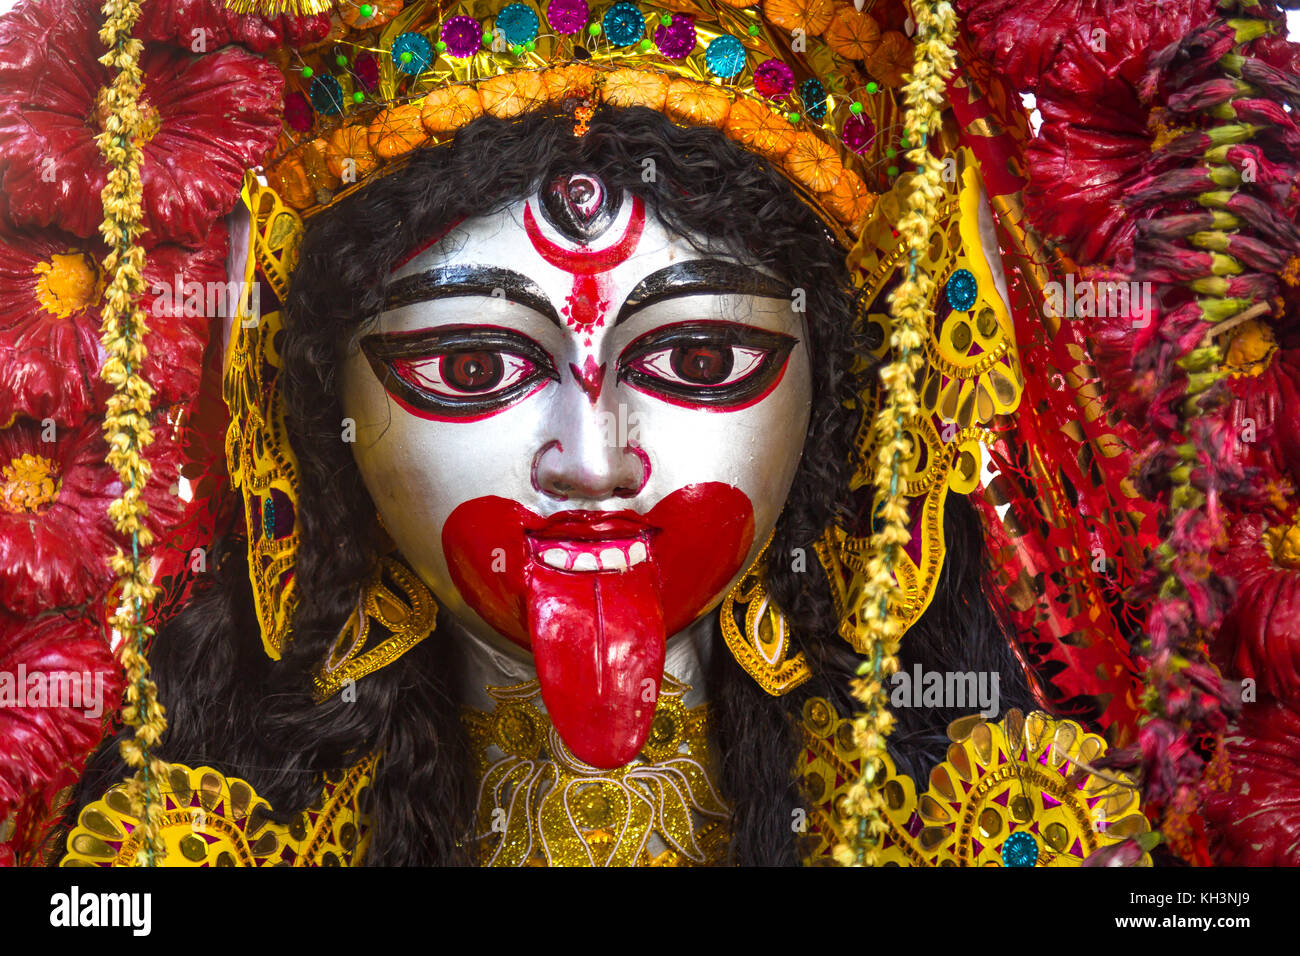 450 Goddess Kali Pictures  Download Free Images on Unsplash